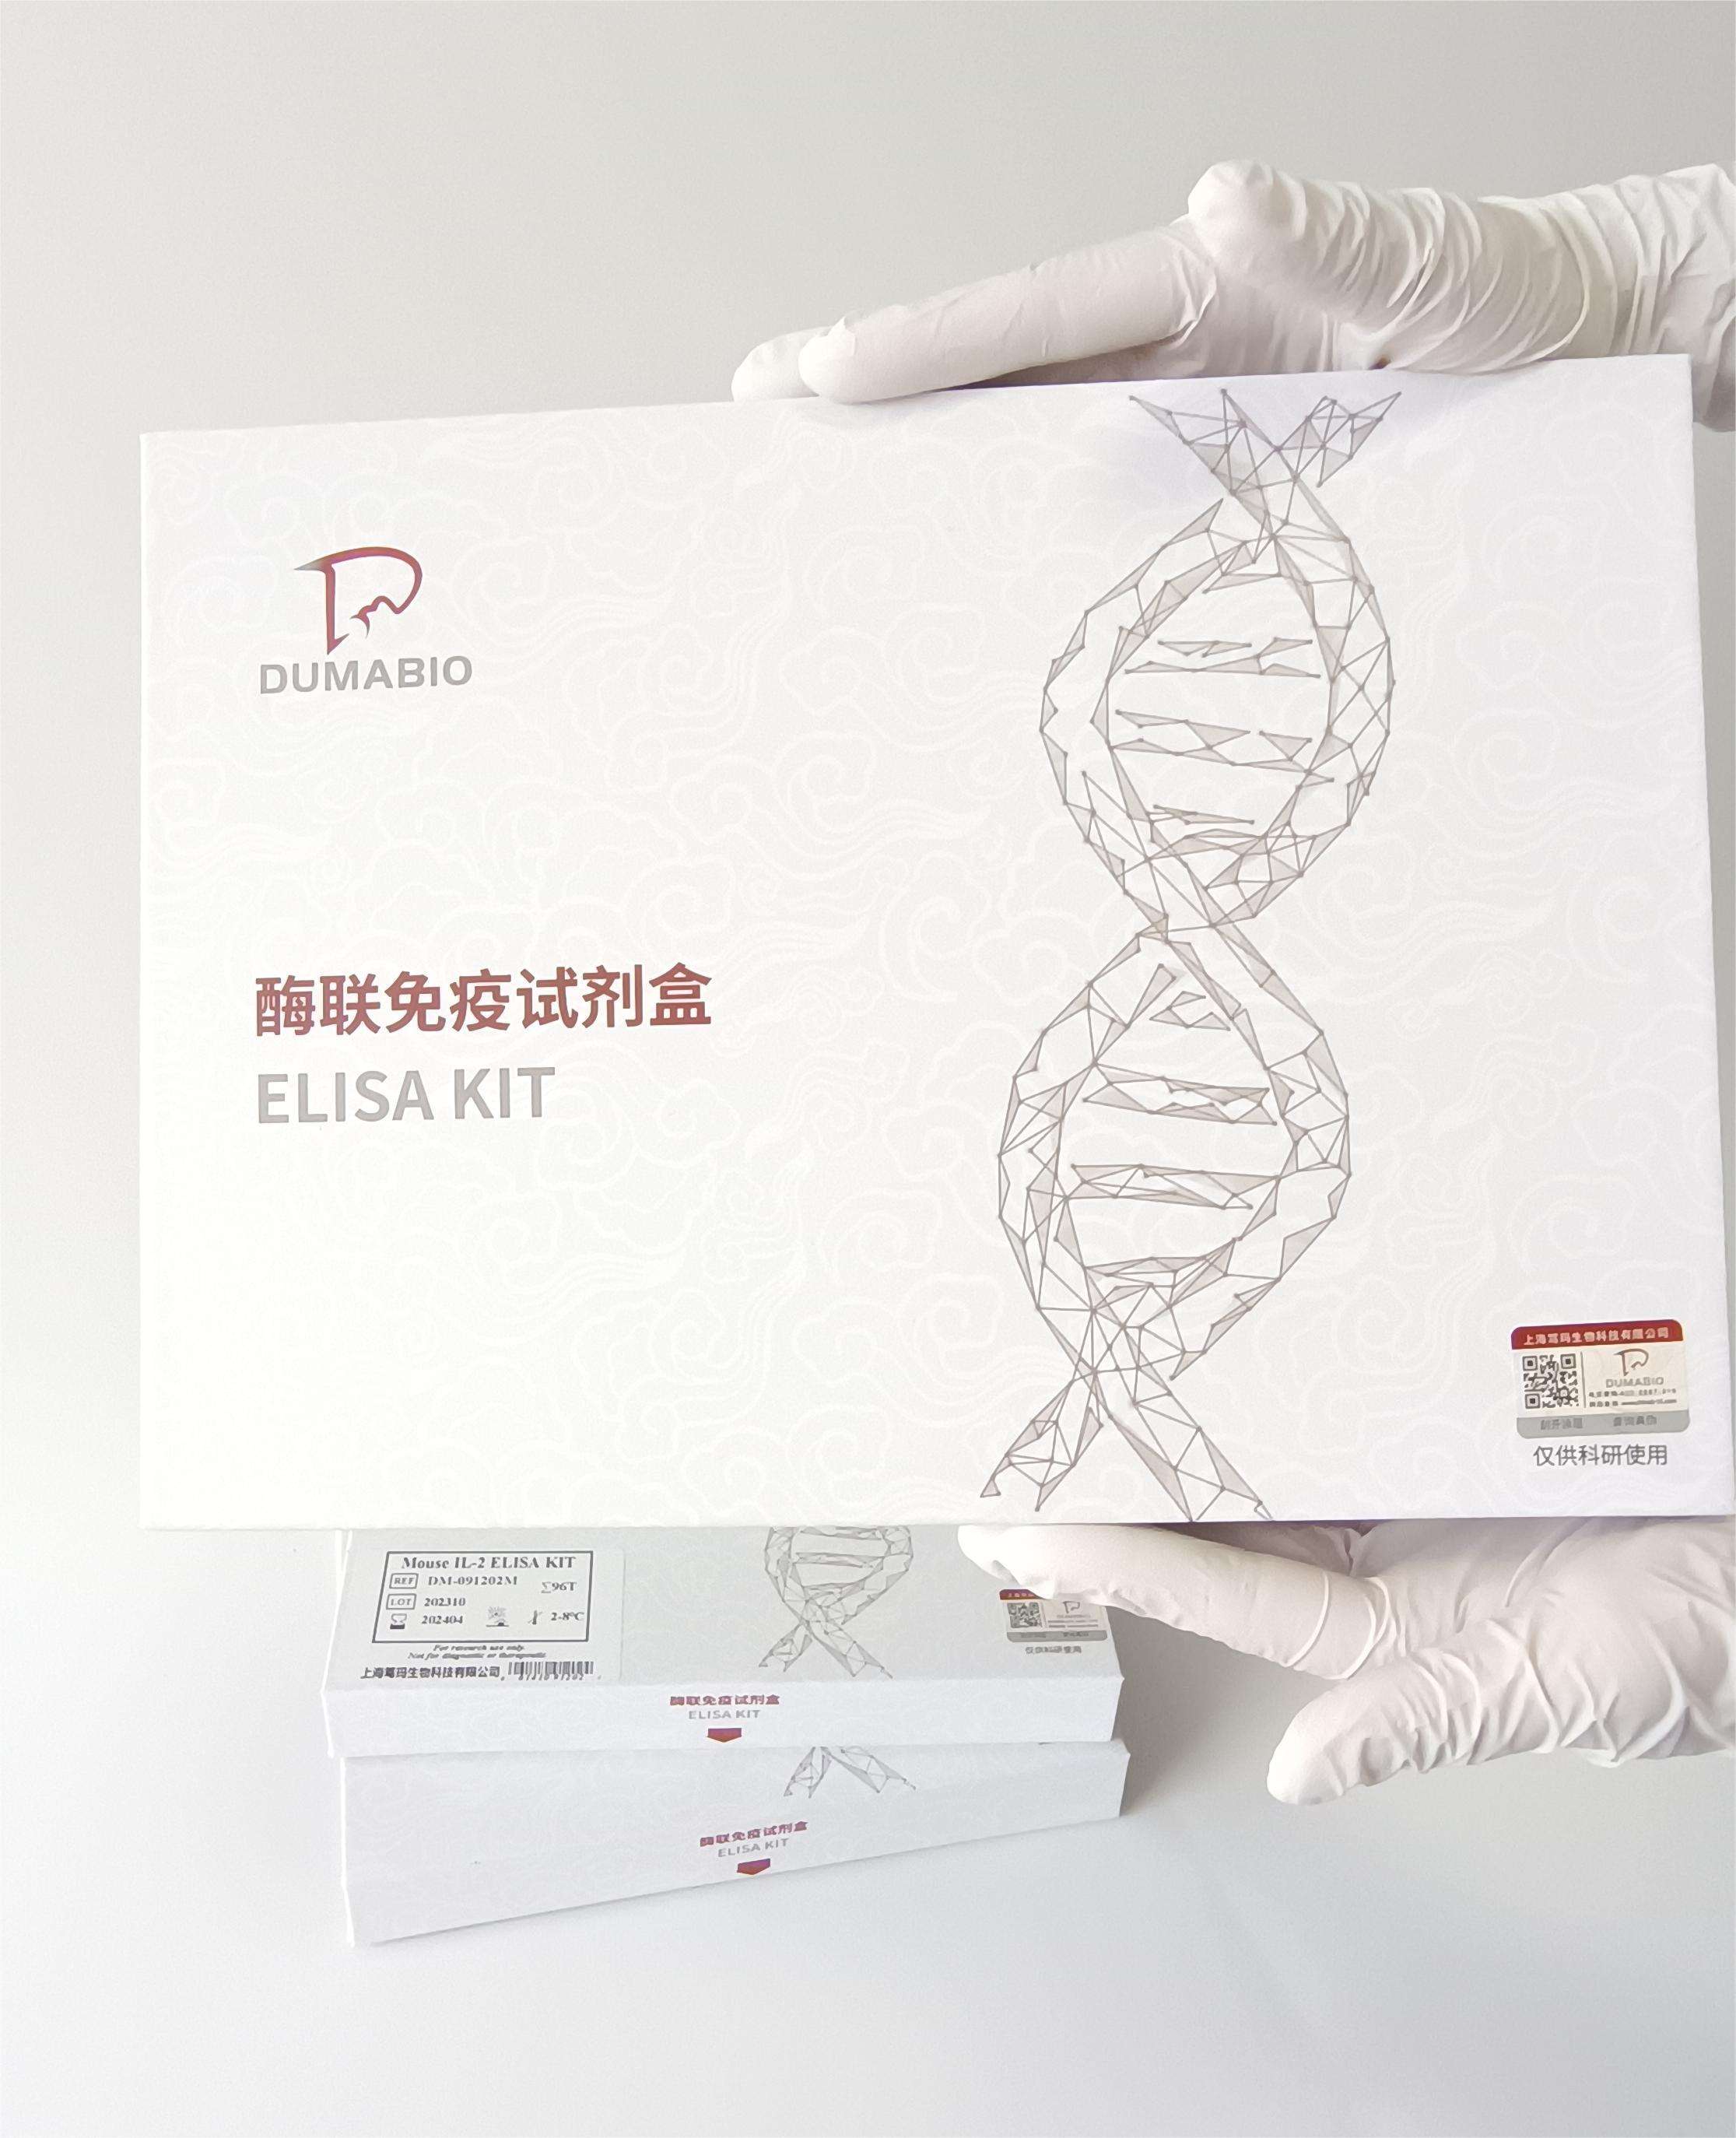 笃玛 犬早老素1(PS1) ELISA 试剂盒 产品介绍